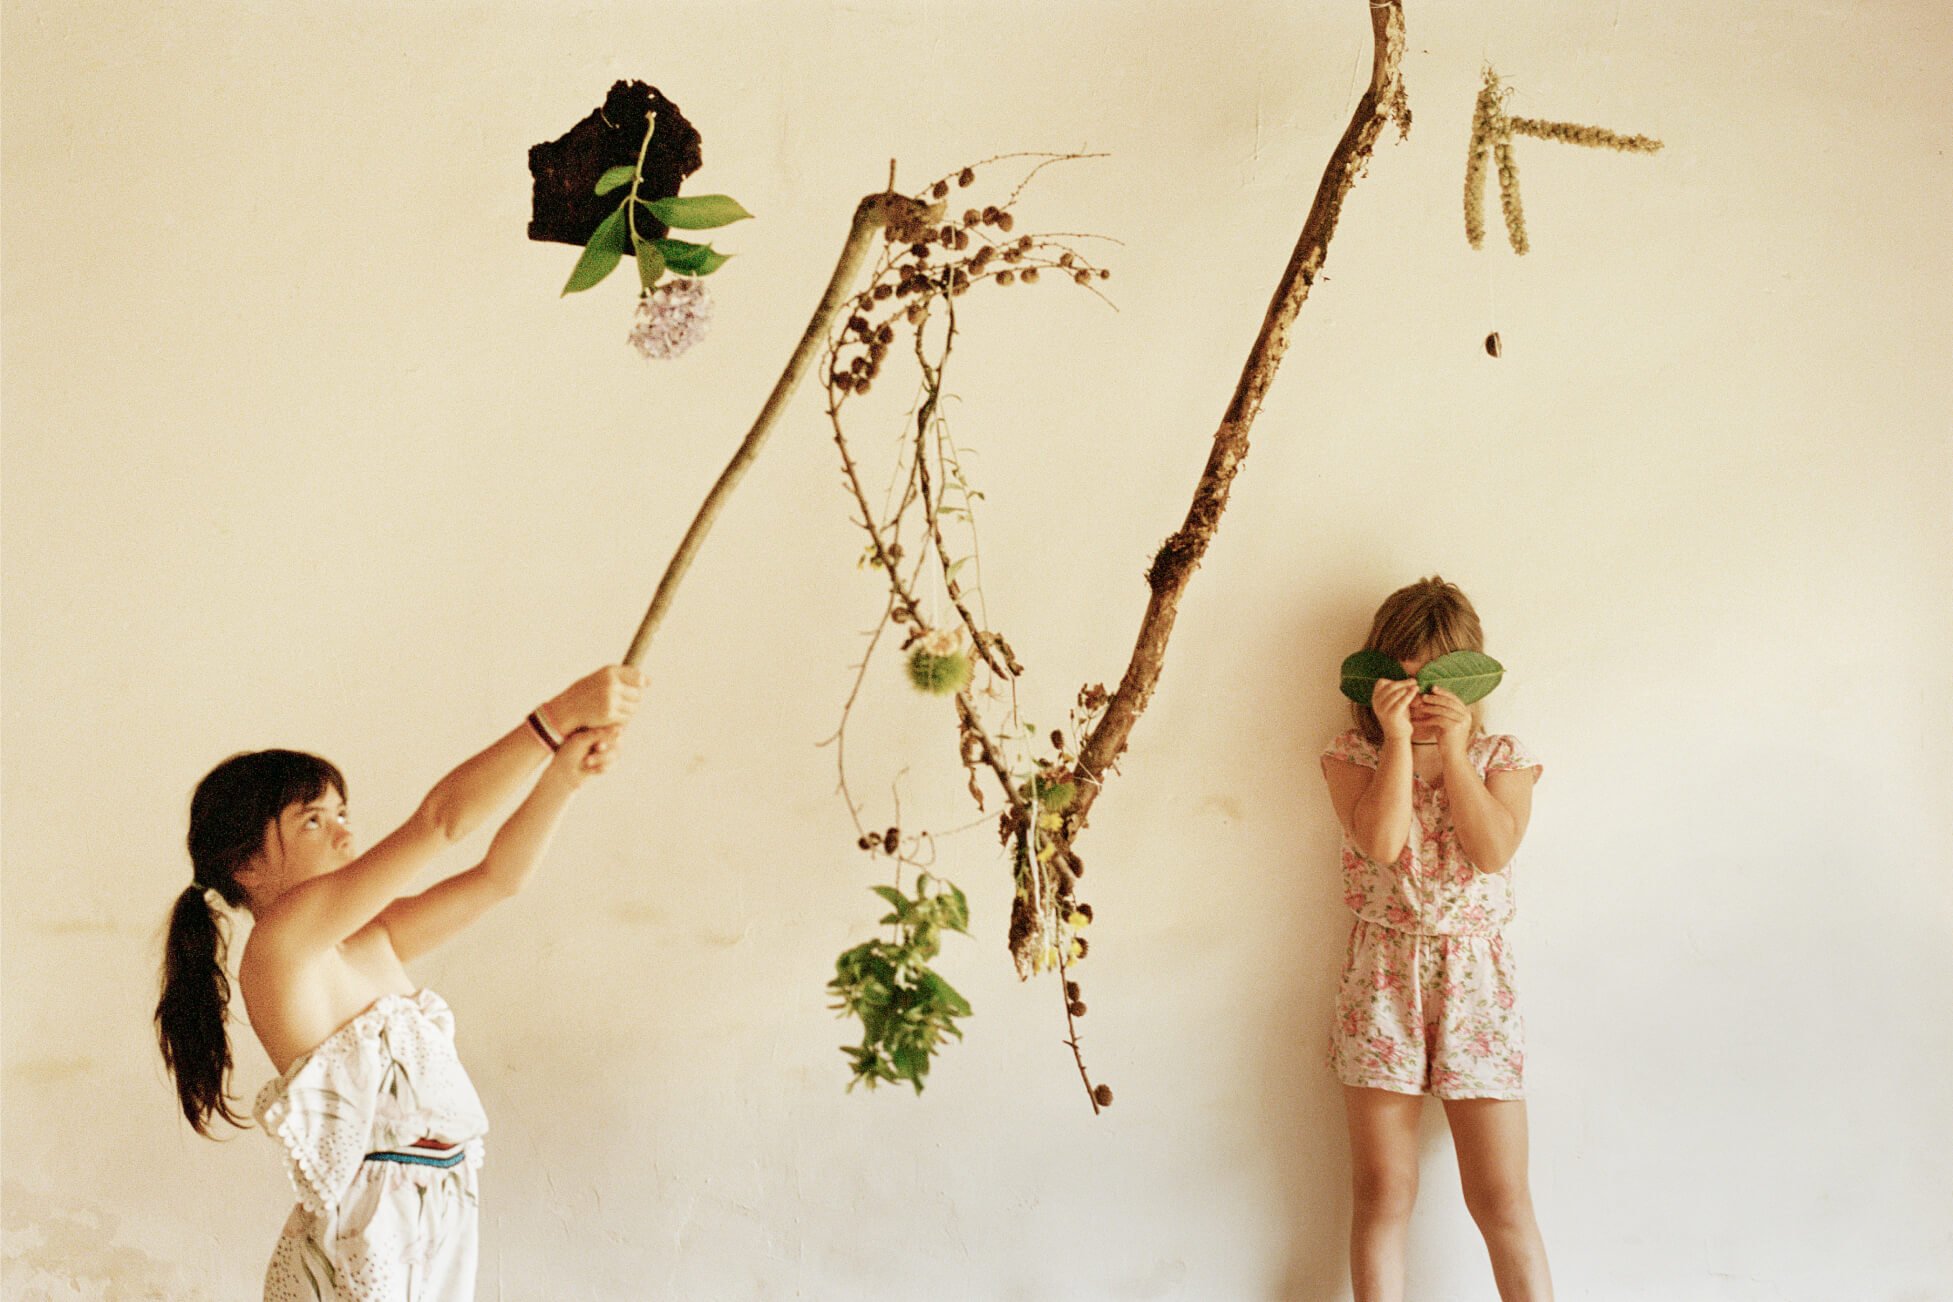 Deux jeunes filles jouent avec des branches et des feuilles sur un fond neutre.